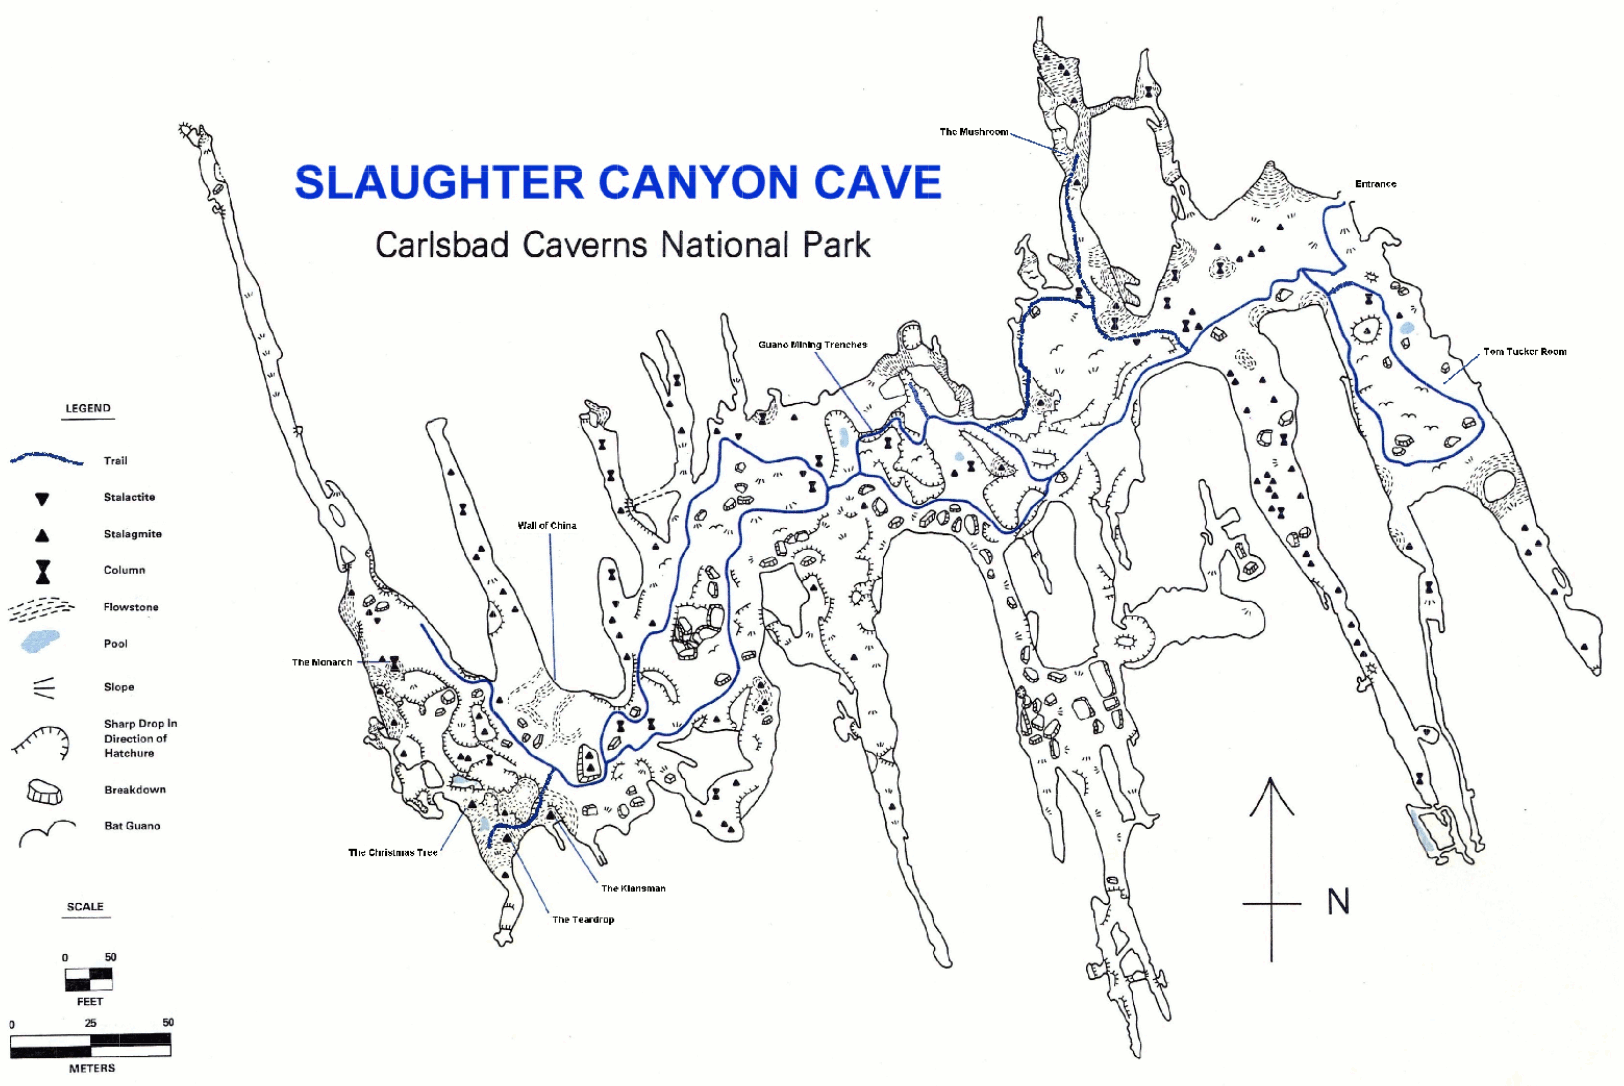 Carlsbad Caverns Maps Npmaps Com Just Free Maps Period